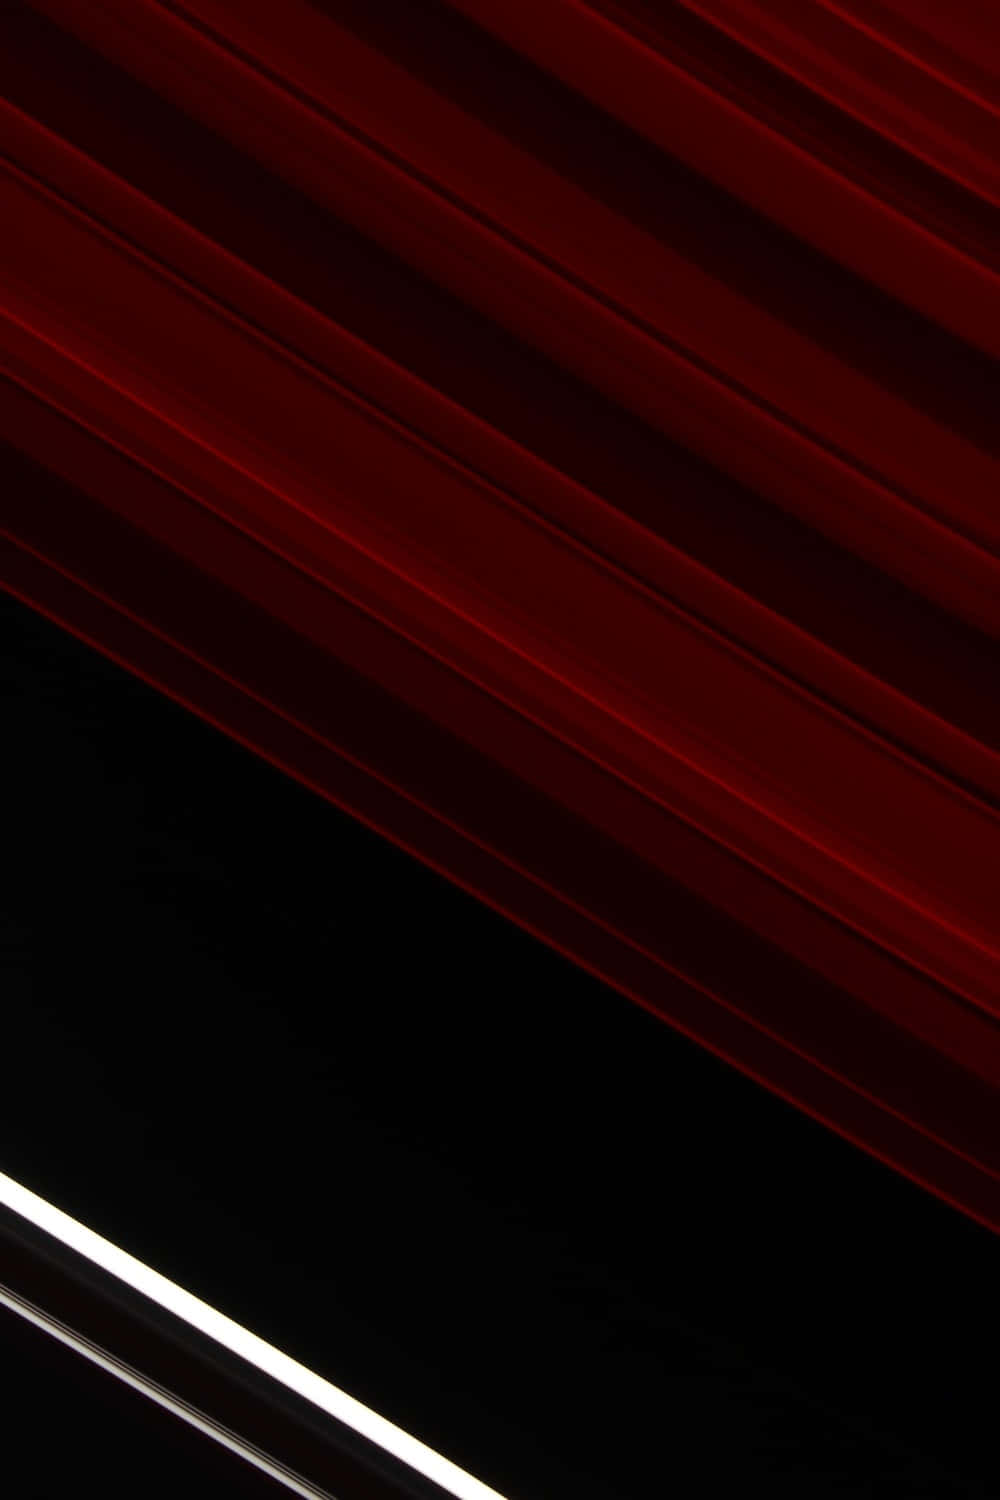 Un'immaginerossa E Nera Di Saturno